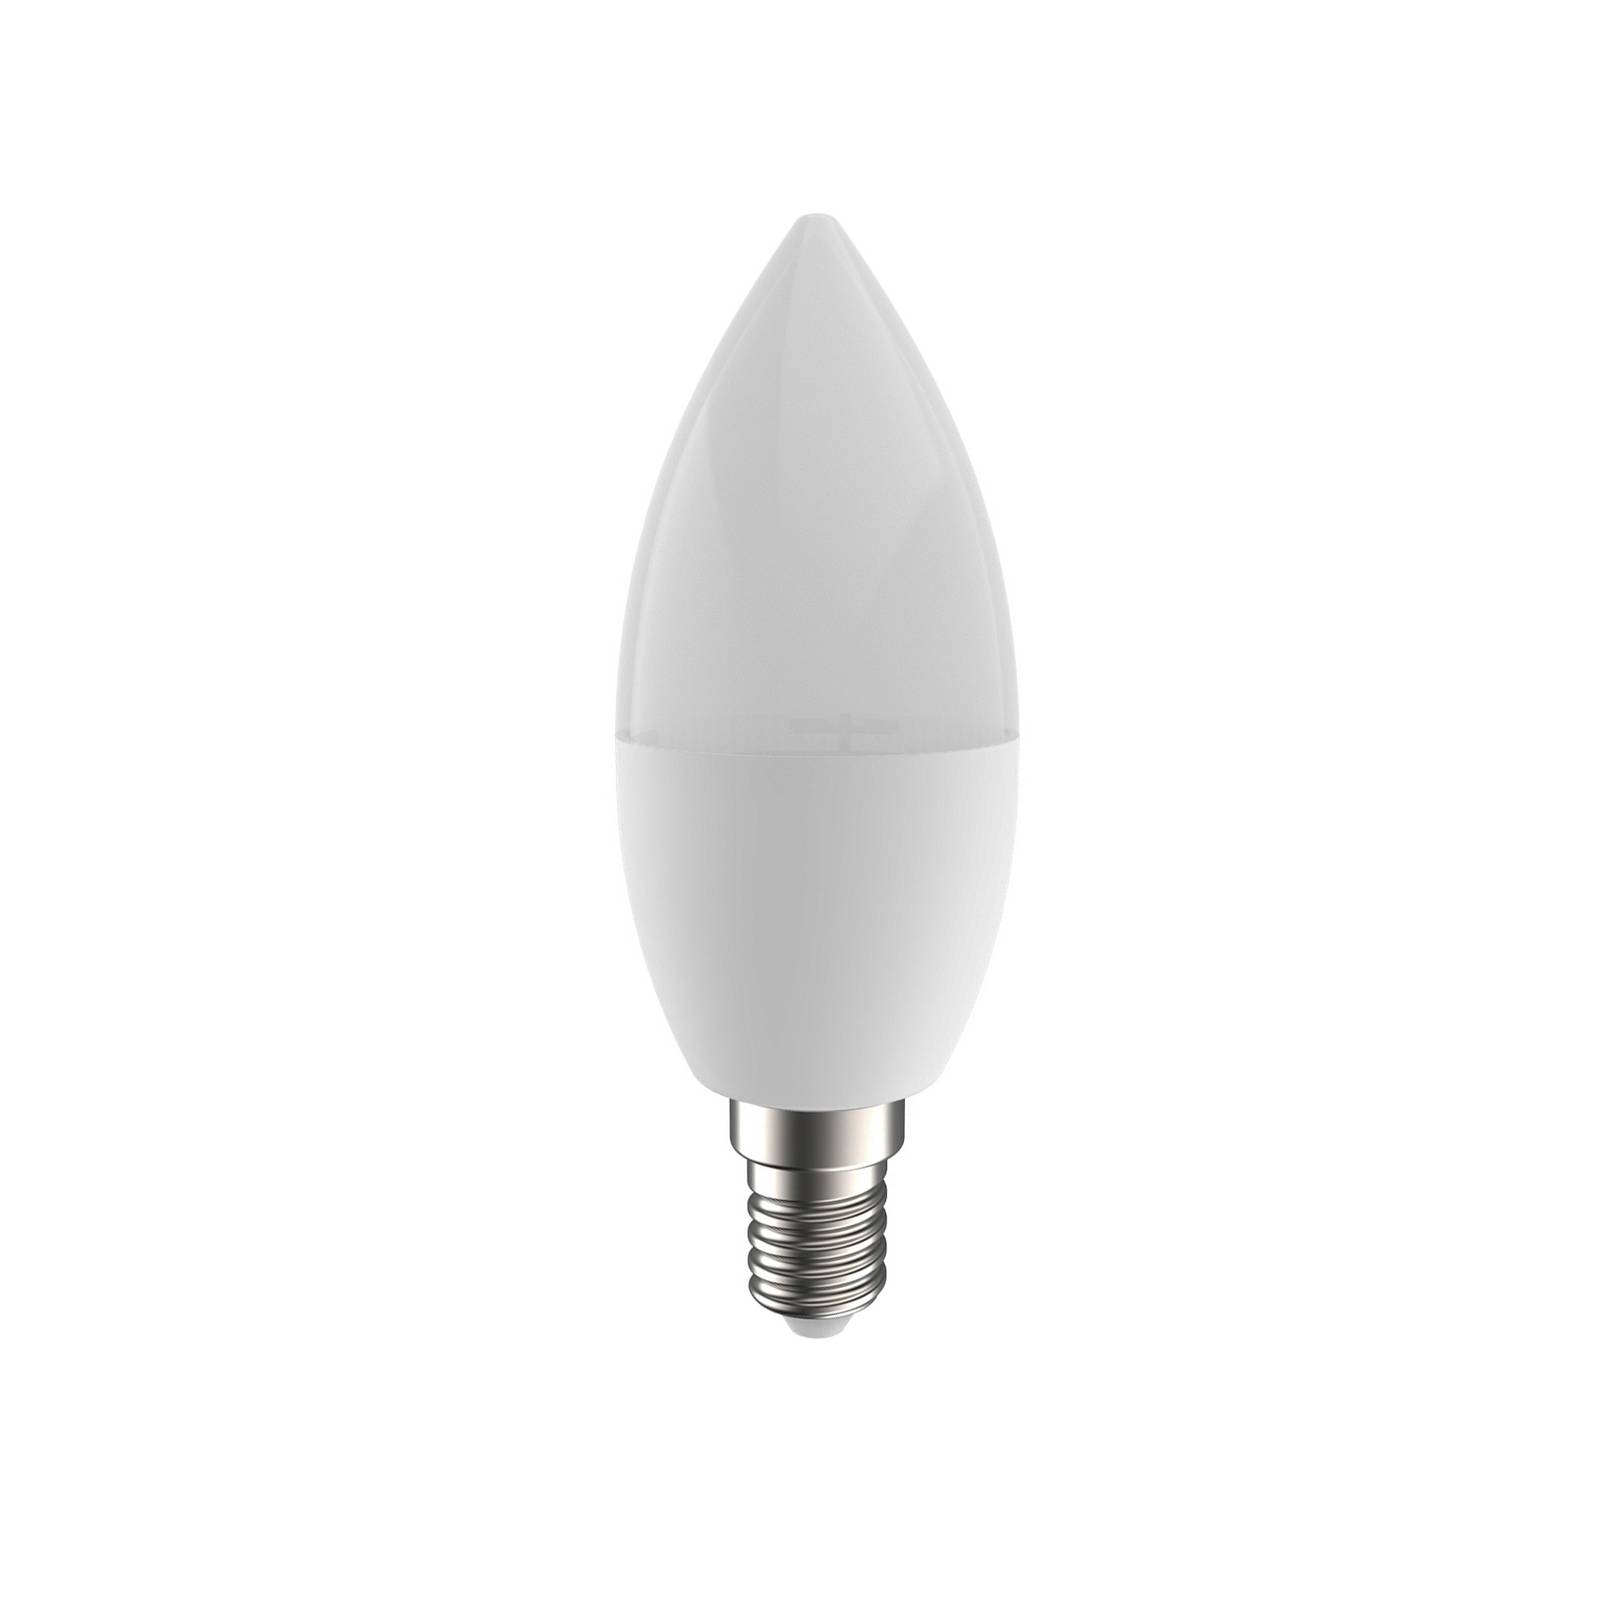 PRIOS Smart LED E14 4,5 W tunable white WLAN RVB Tuya